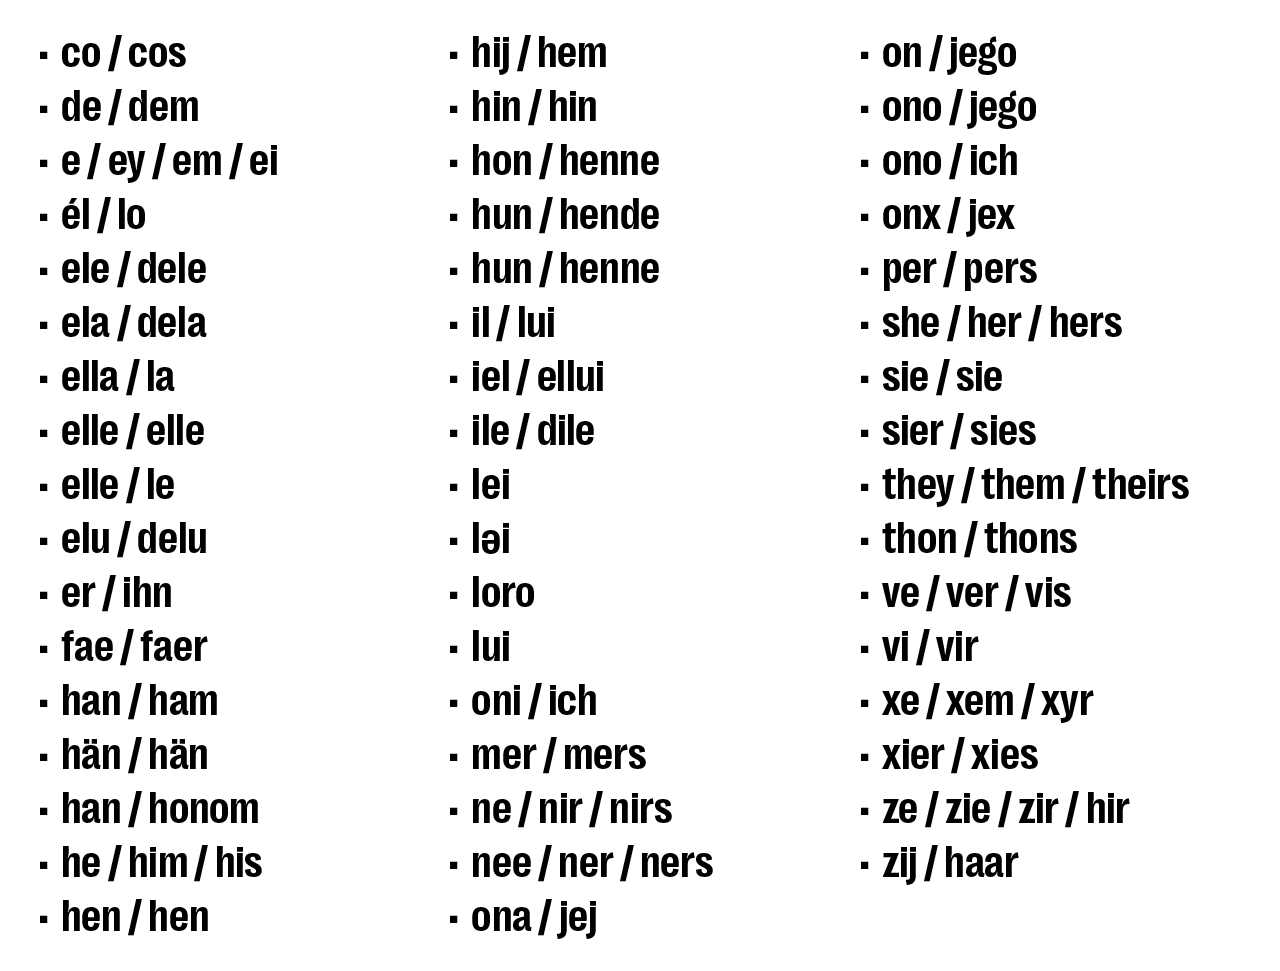 Lista de pronomes